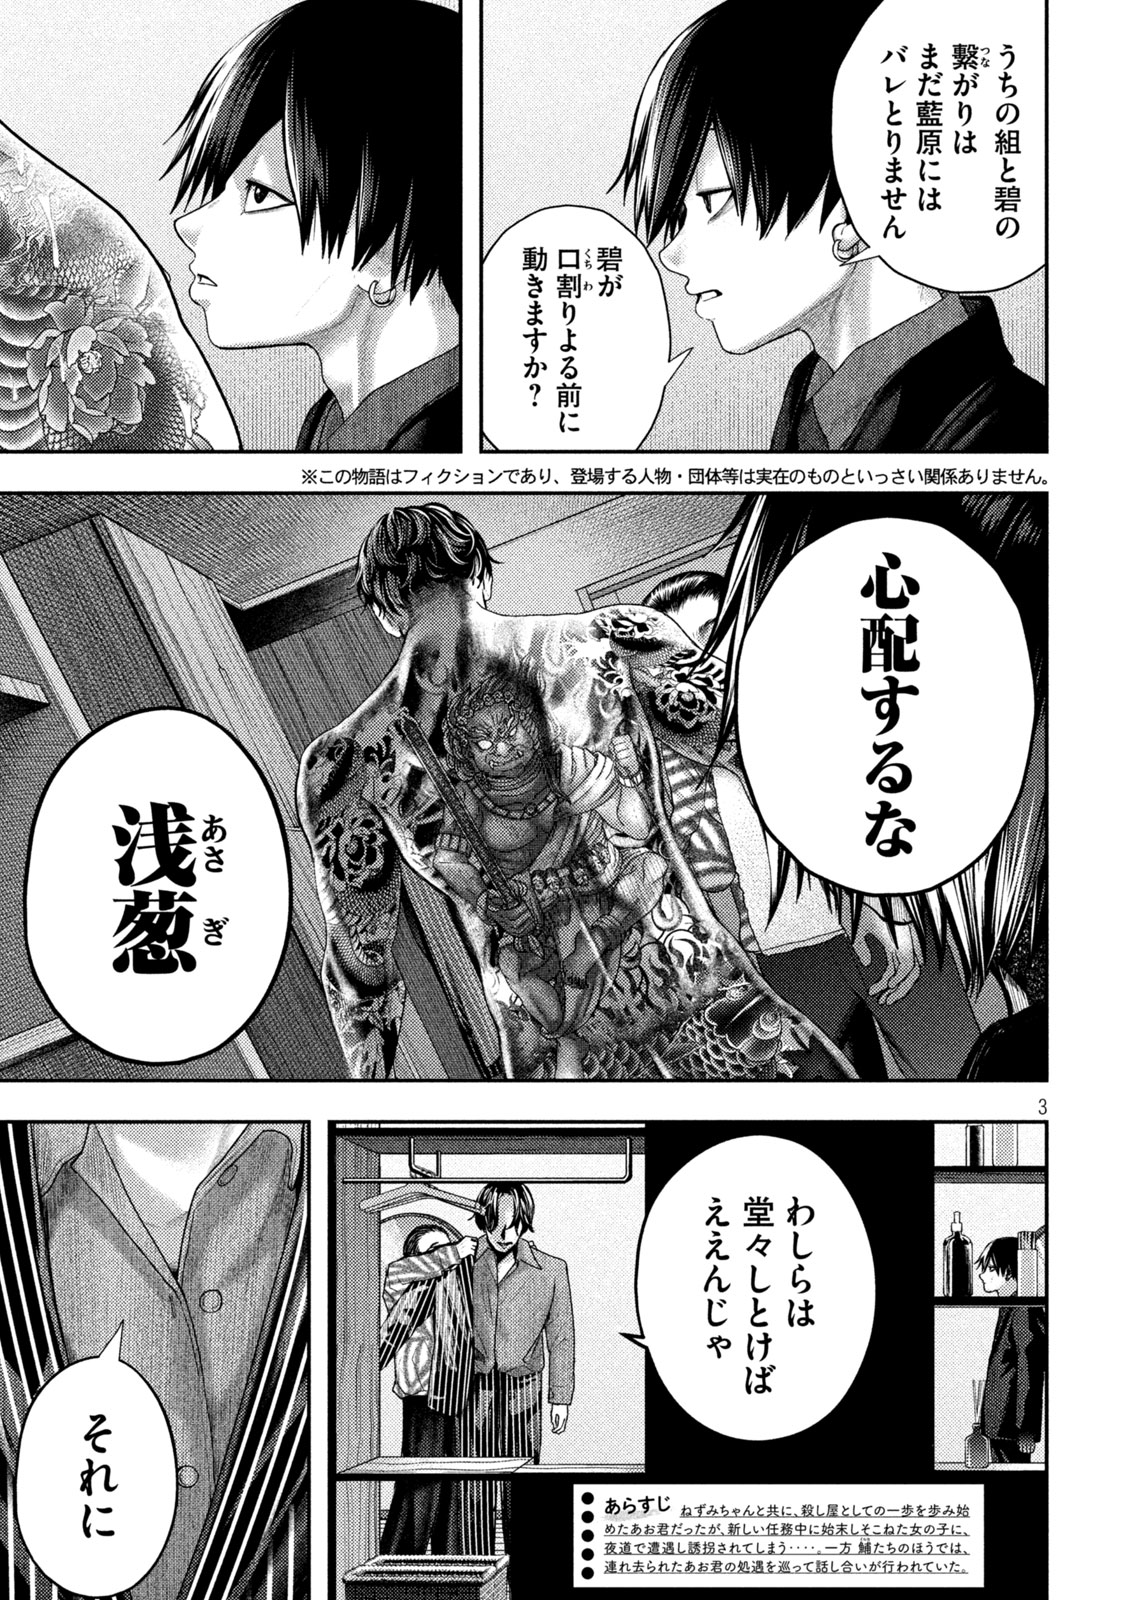 Nezumi no Koi - Chapter 16 - Page 3